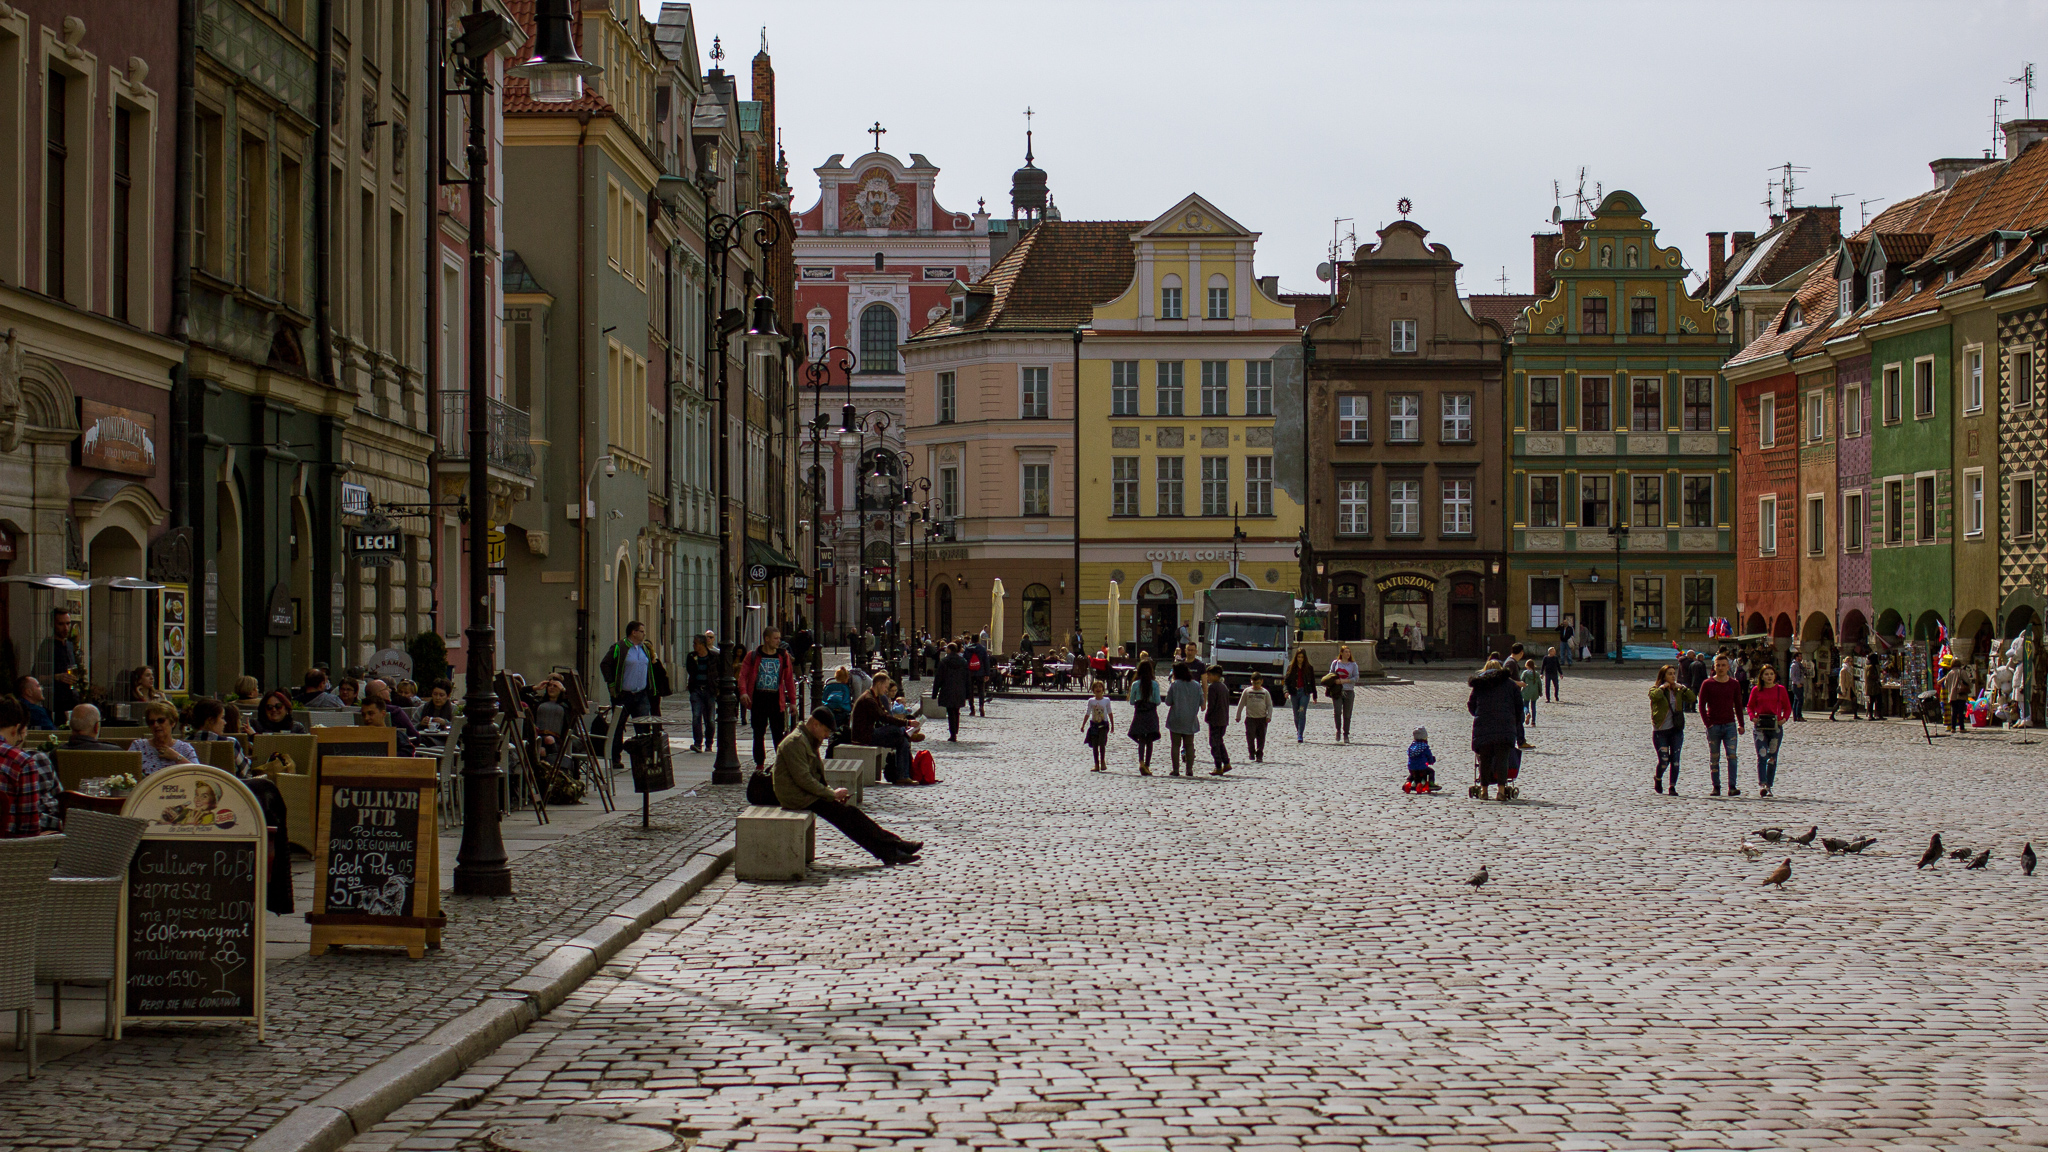 Blick auf den gepflasterten Marktplatz von Posen, rechts und links gesäumt von bunten, historischen Gebäuden.